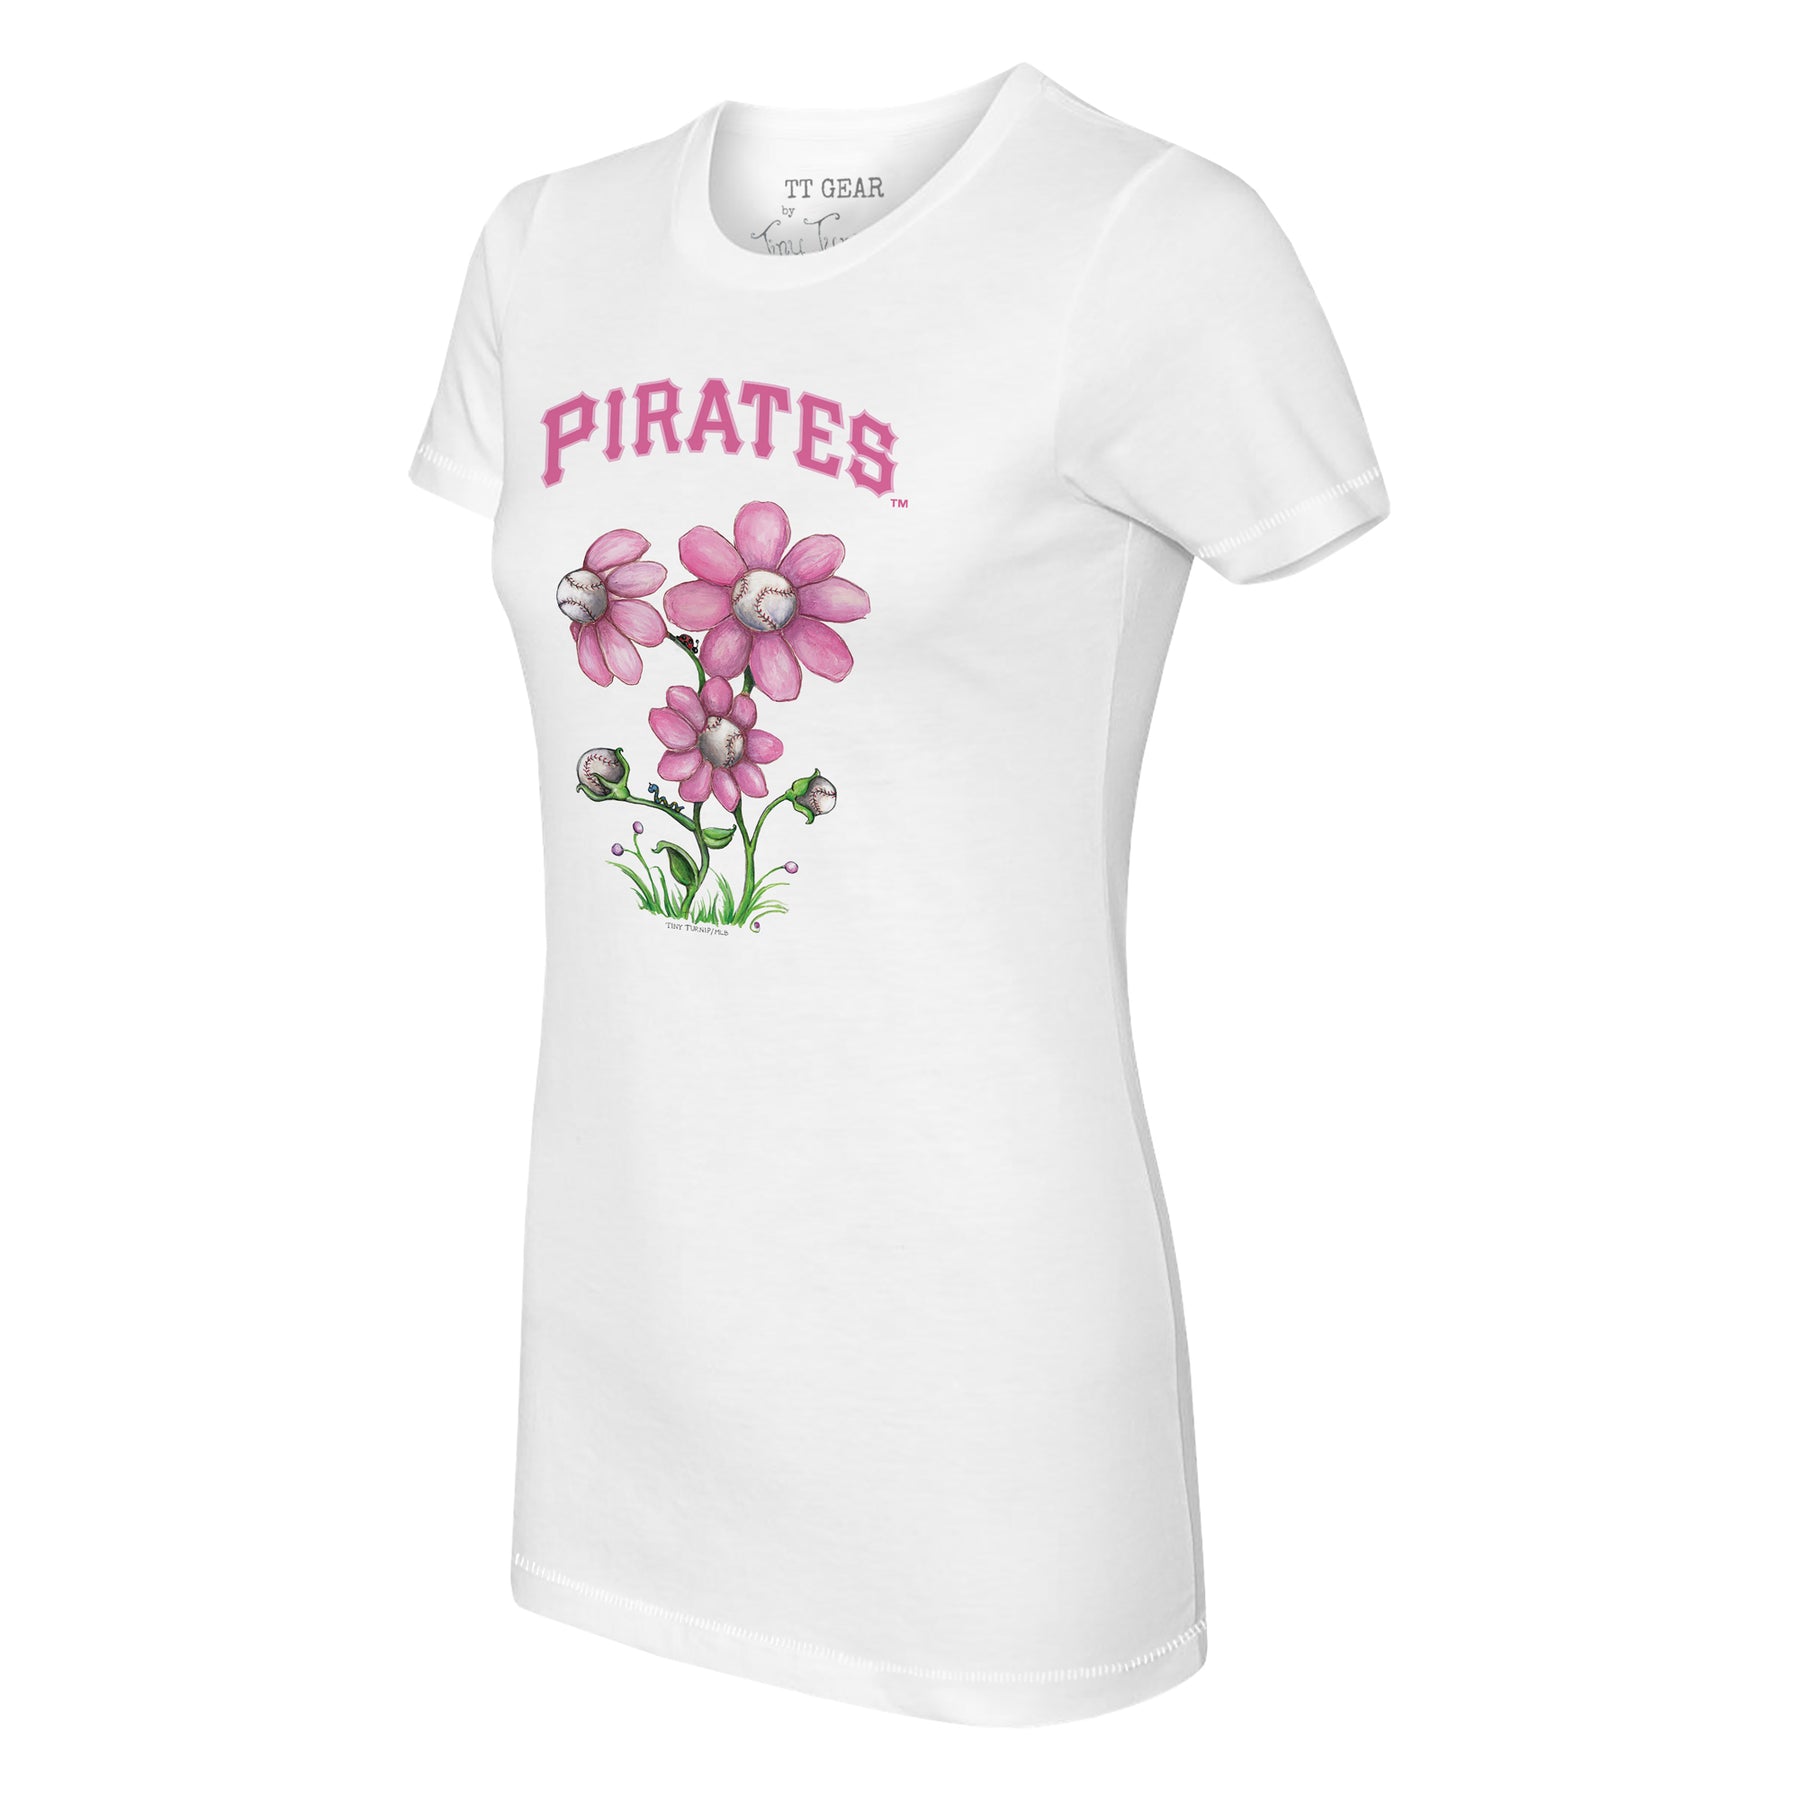 Pittsburgh Pirates Blooming Baseballs Tee Shirt 5T / White